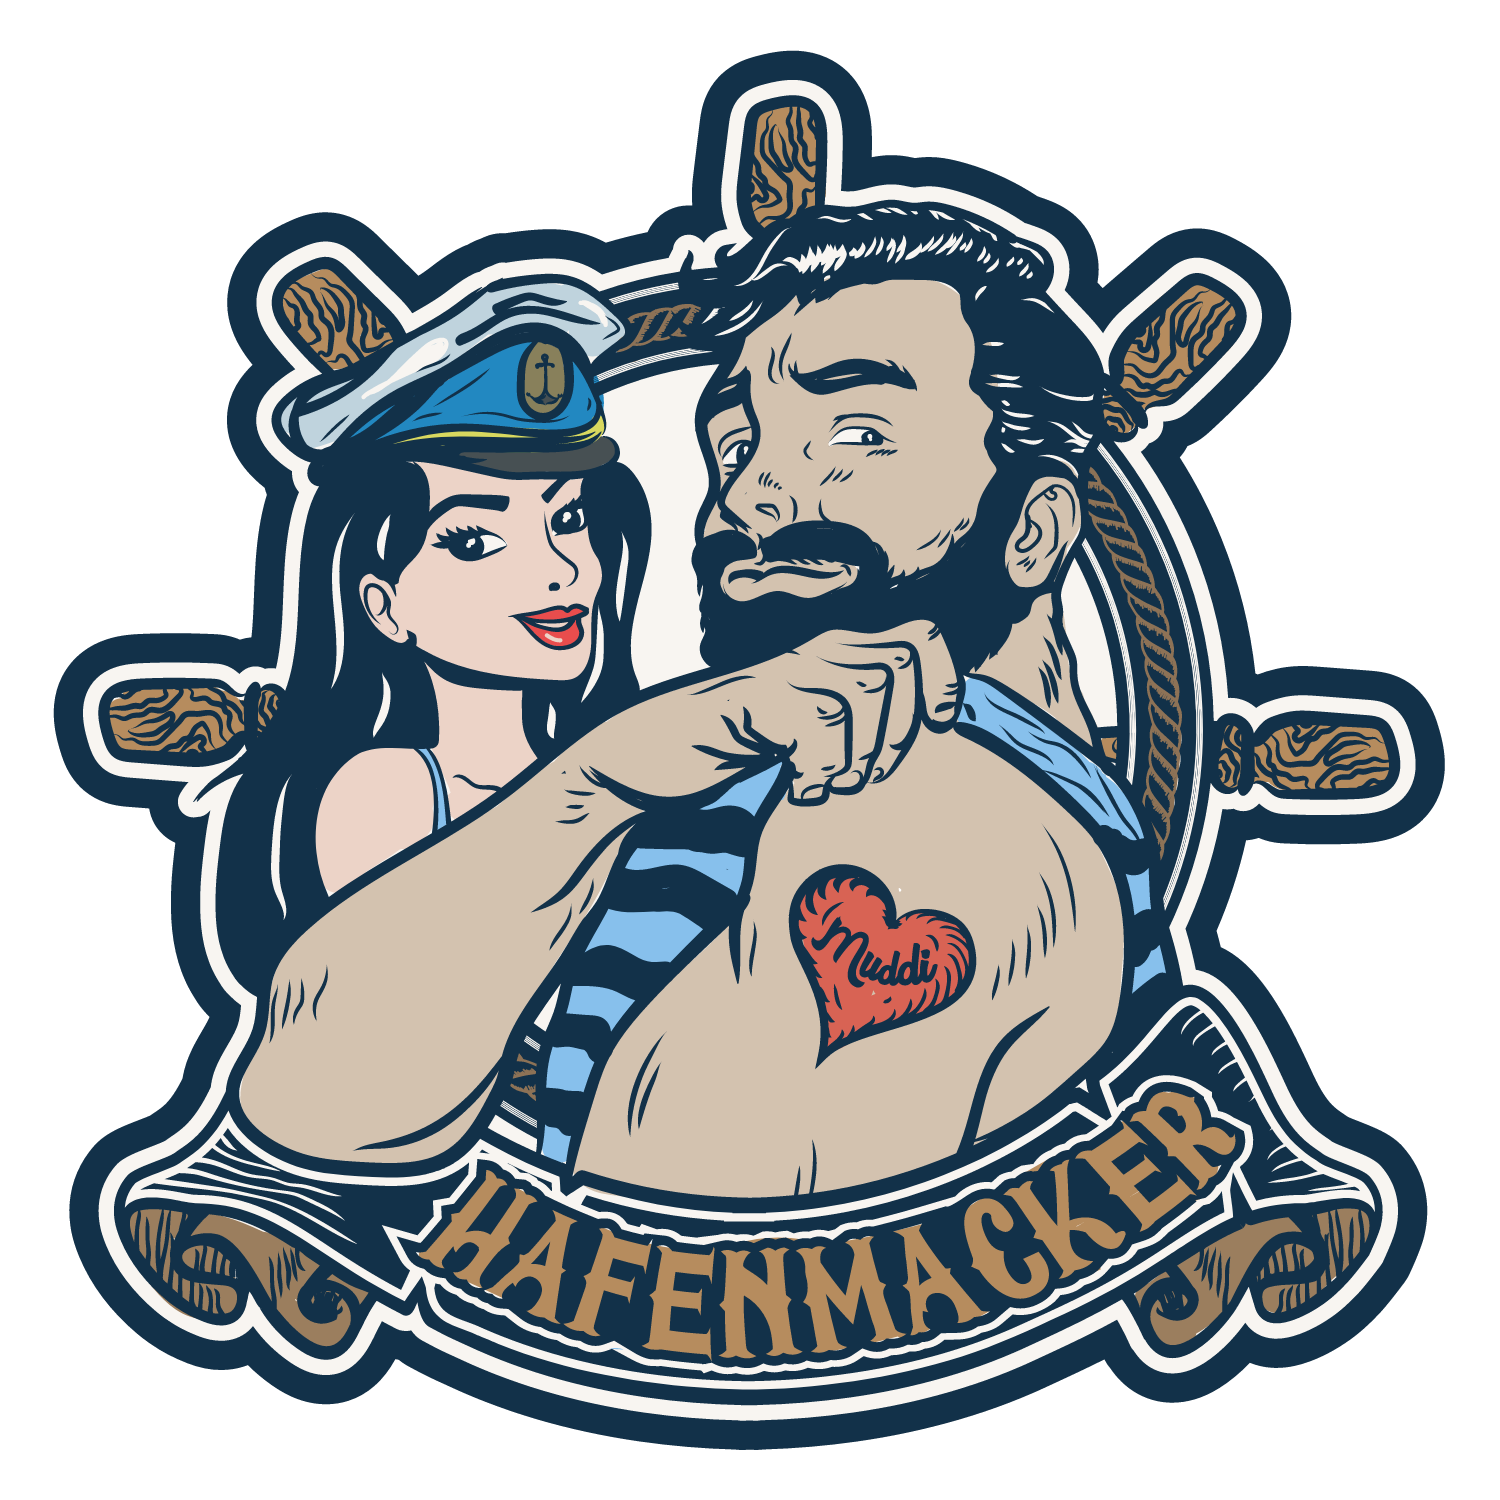 großes Hafenmacker Logo - Seemann mit Frau und Anker